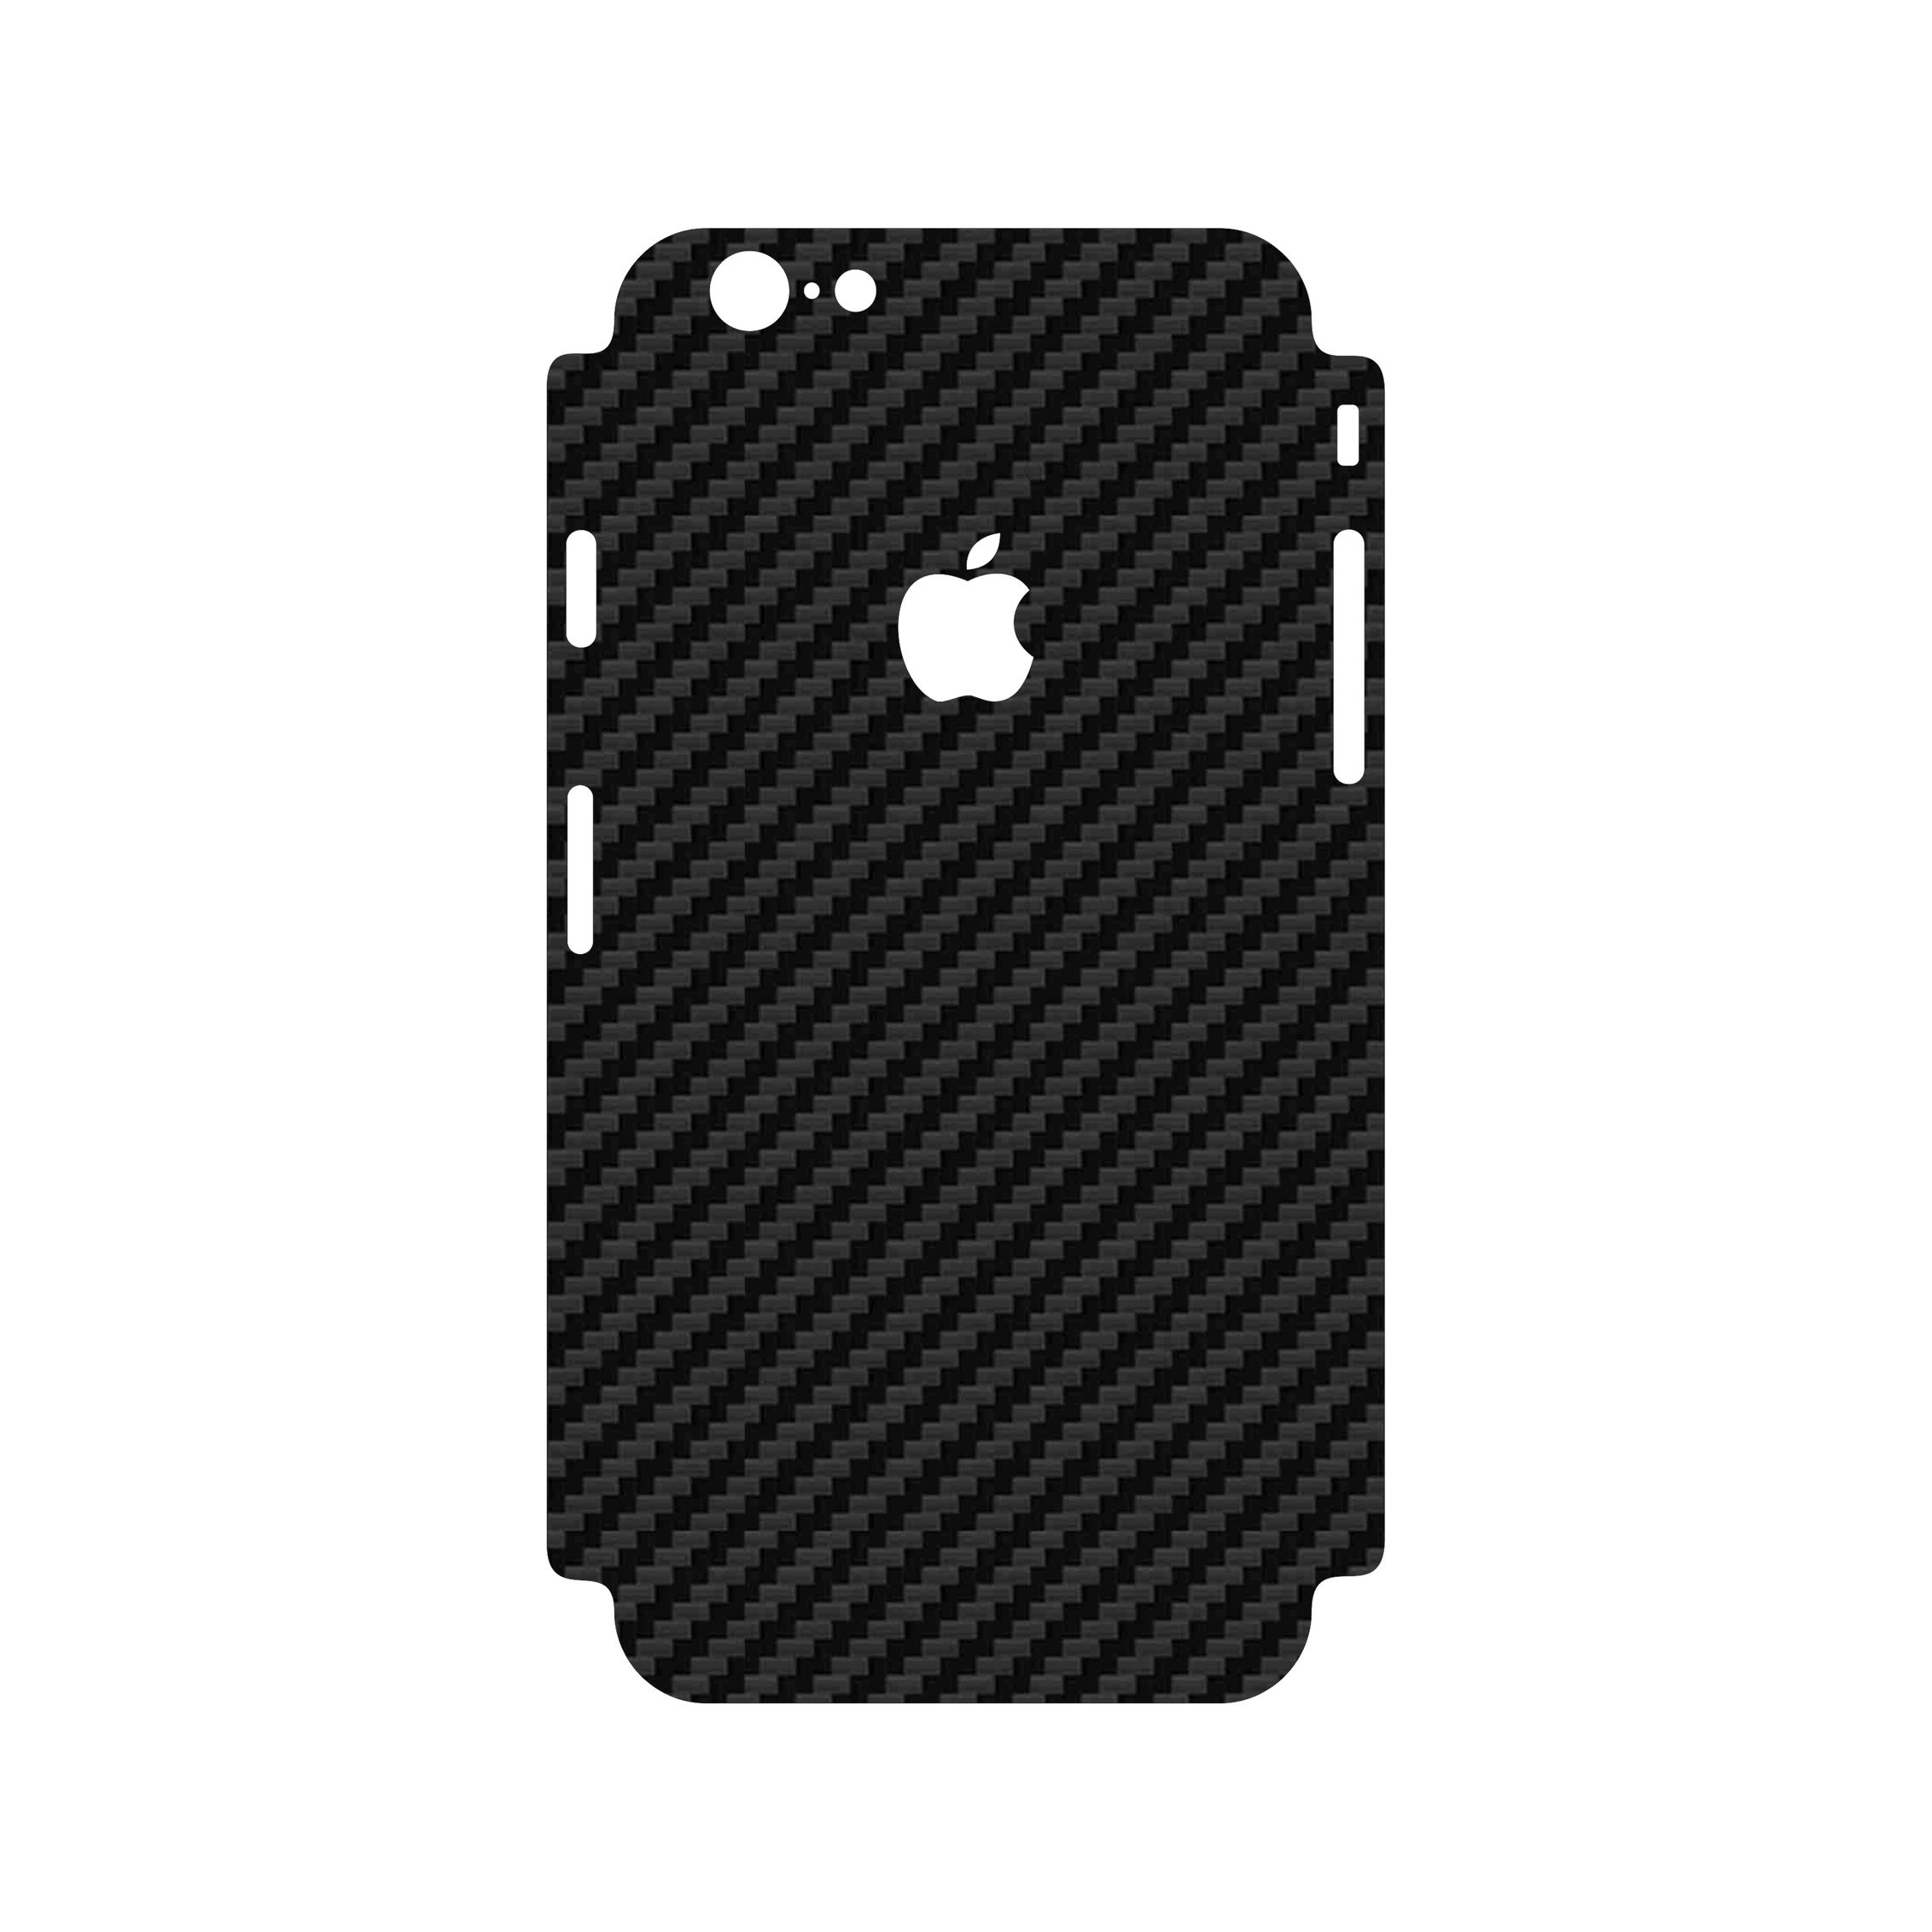 برچسب پوششی مدل FIBER101 کد 125X101 مناسب برای گوشی موبایل اپل Iphone 6/6s